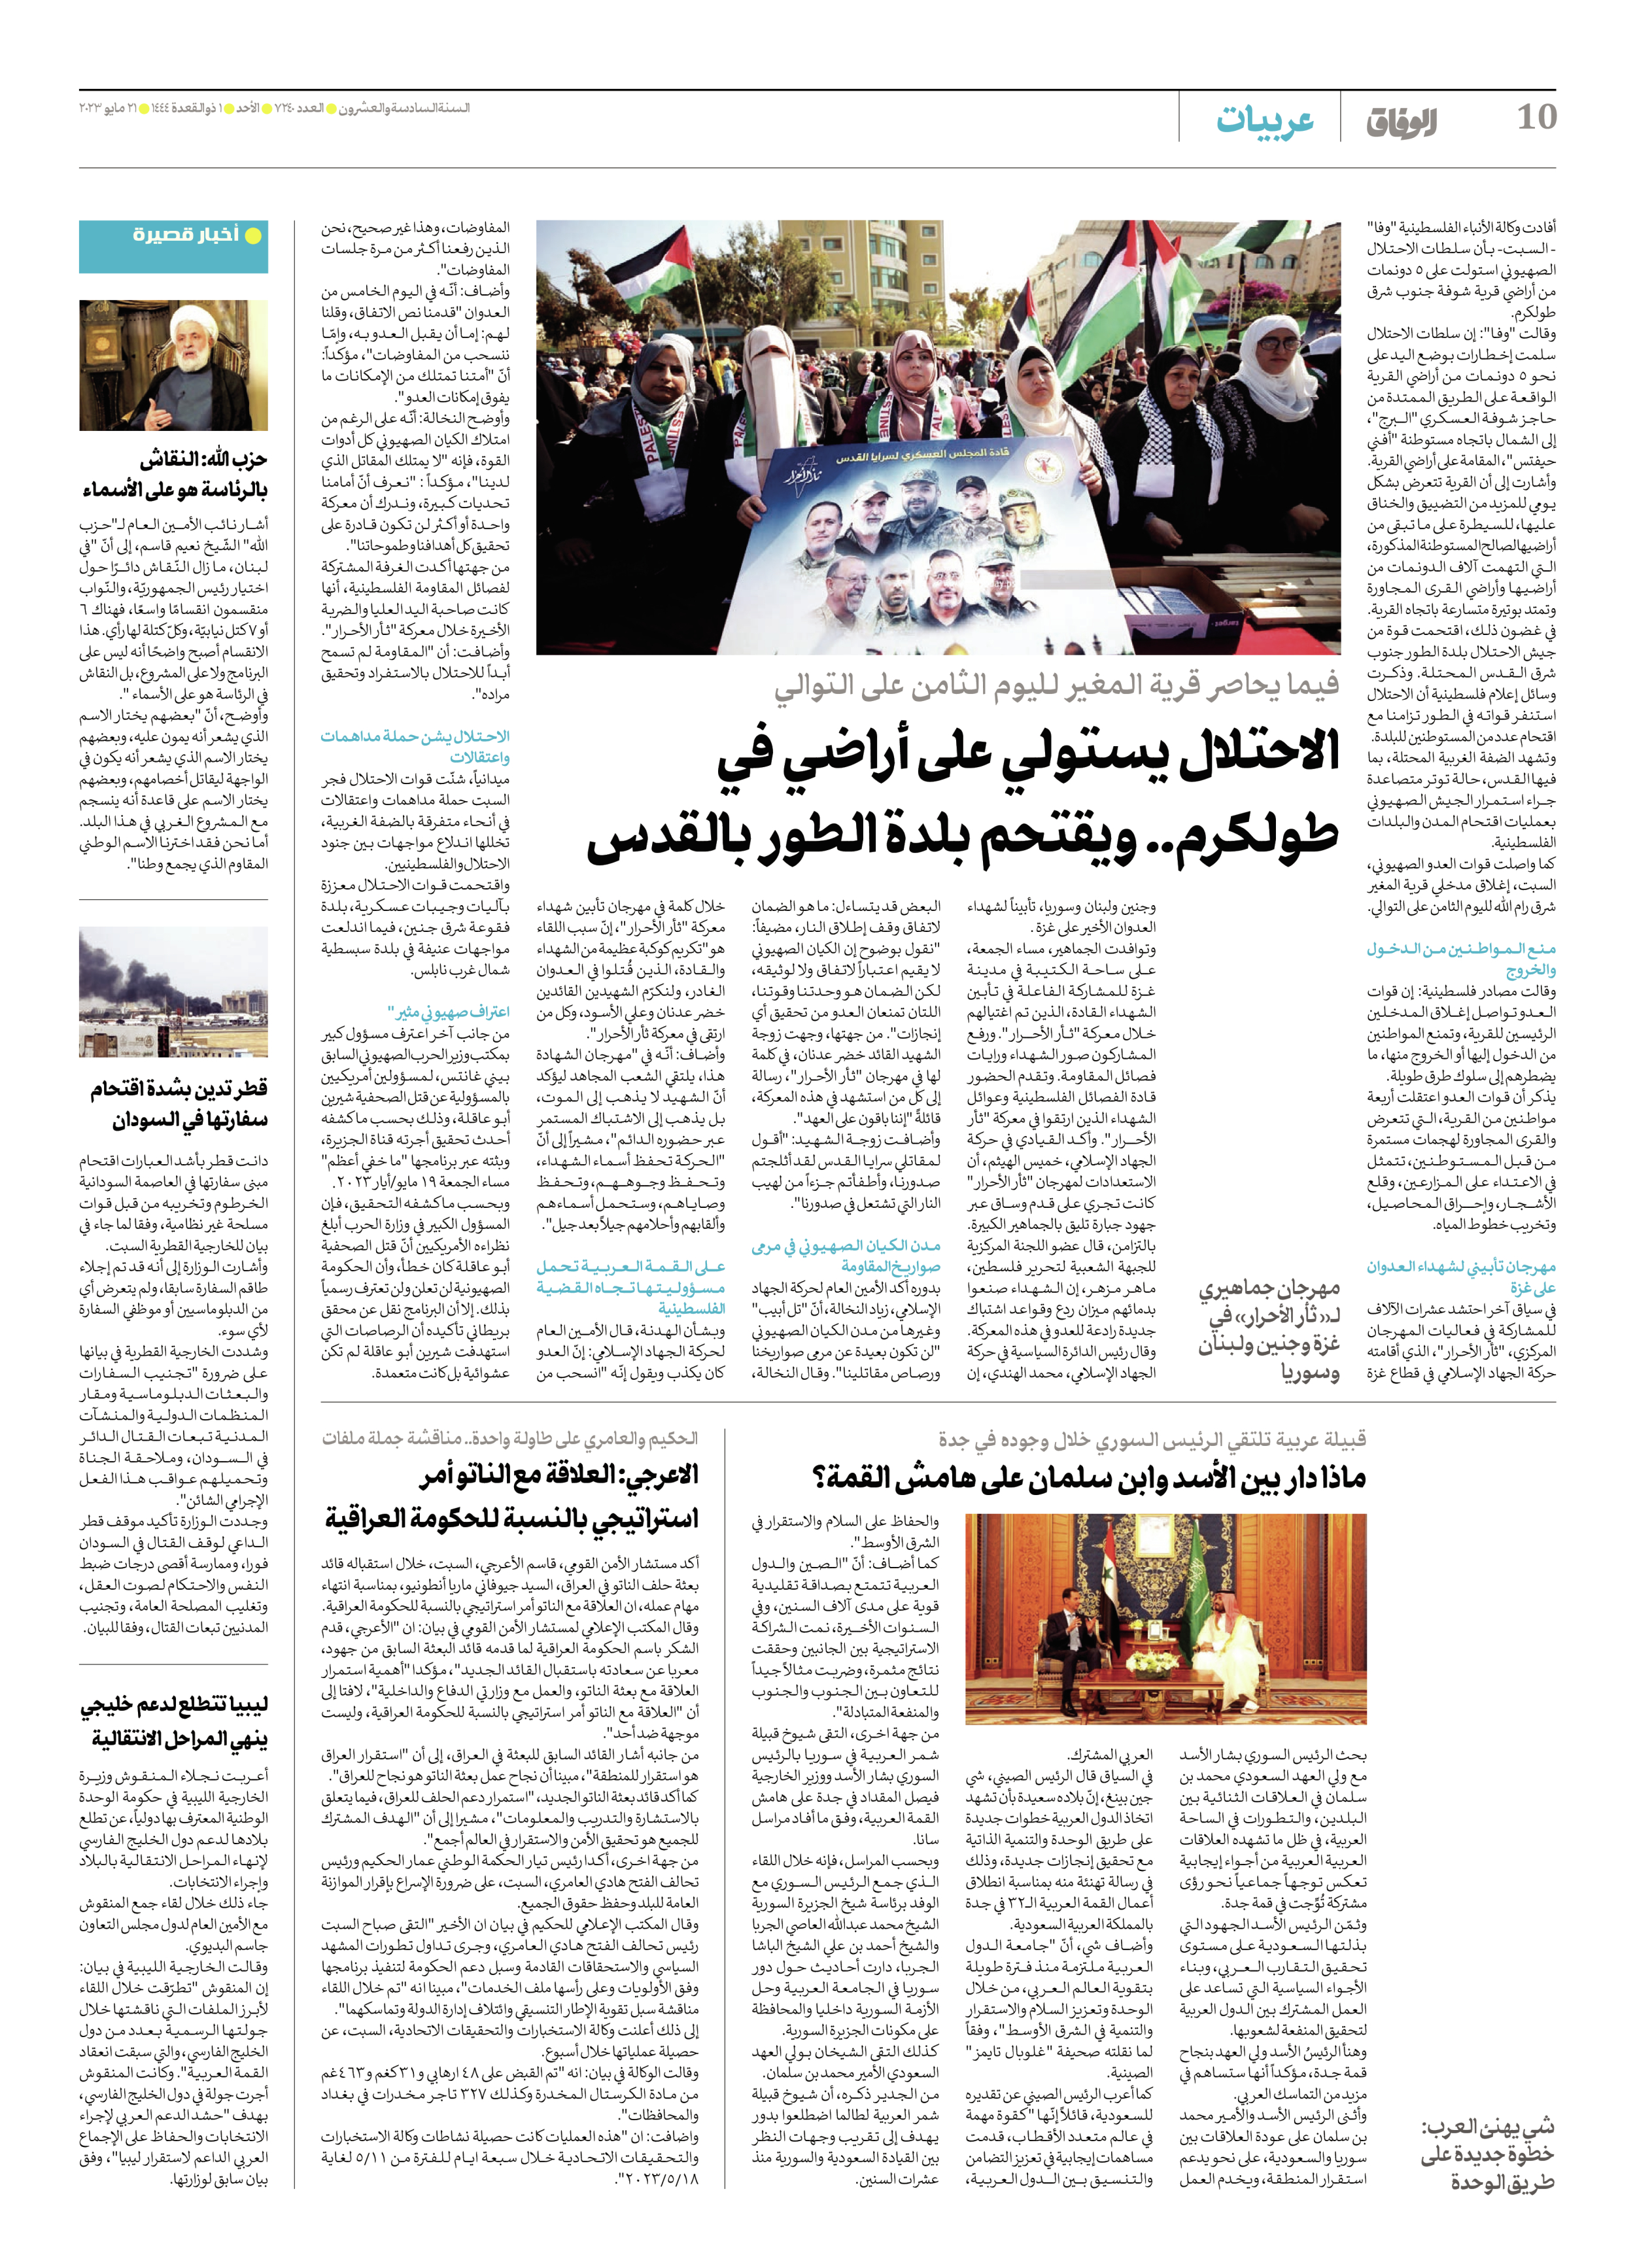 صحیفة ایران الدولیة الوفاق - العدد سبعة آلاف ومائتان وأربعون - ٢١ مايو ٢٠٢٣ - الصفحة ۱۰